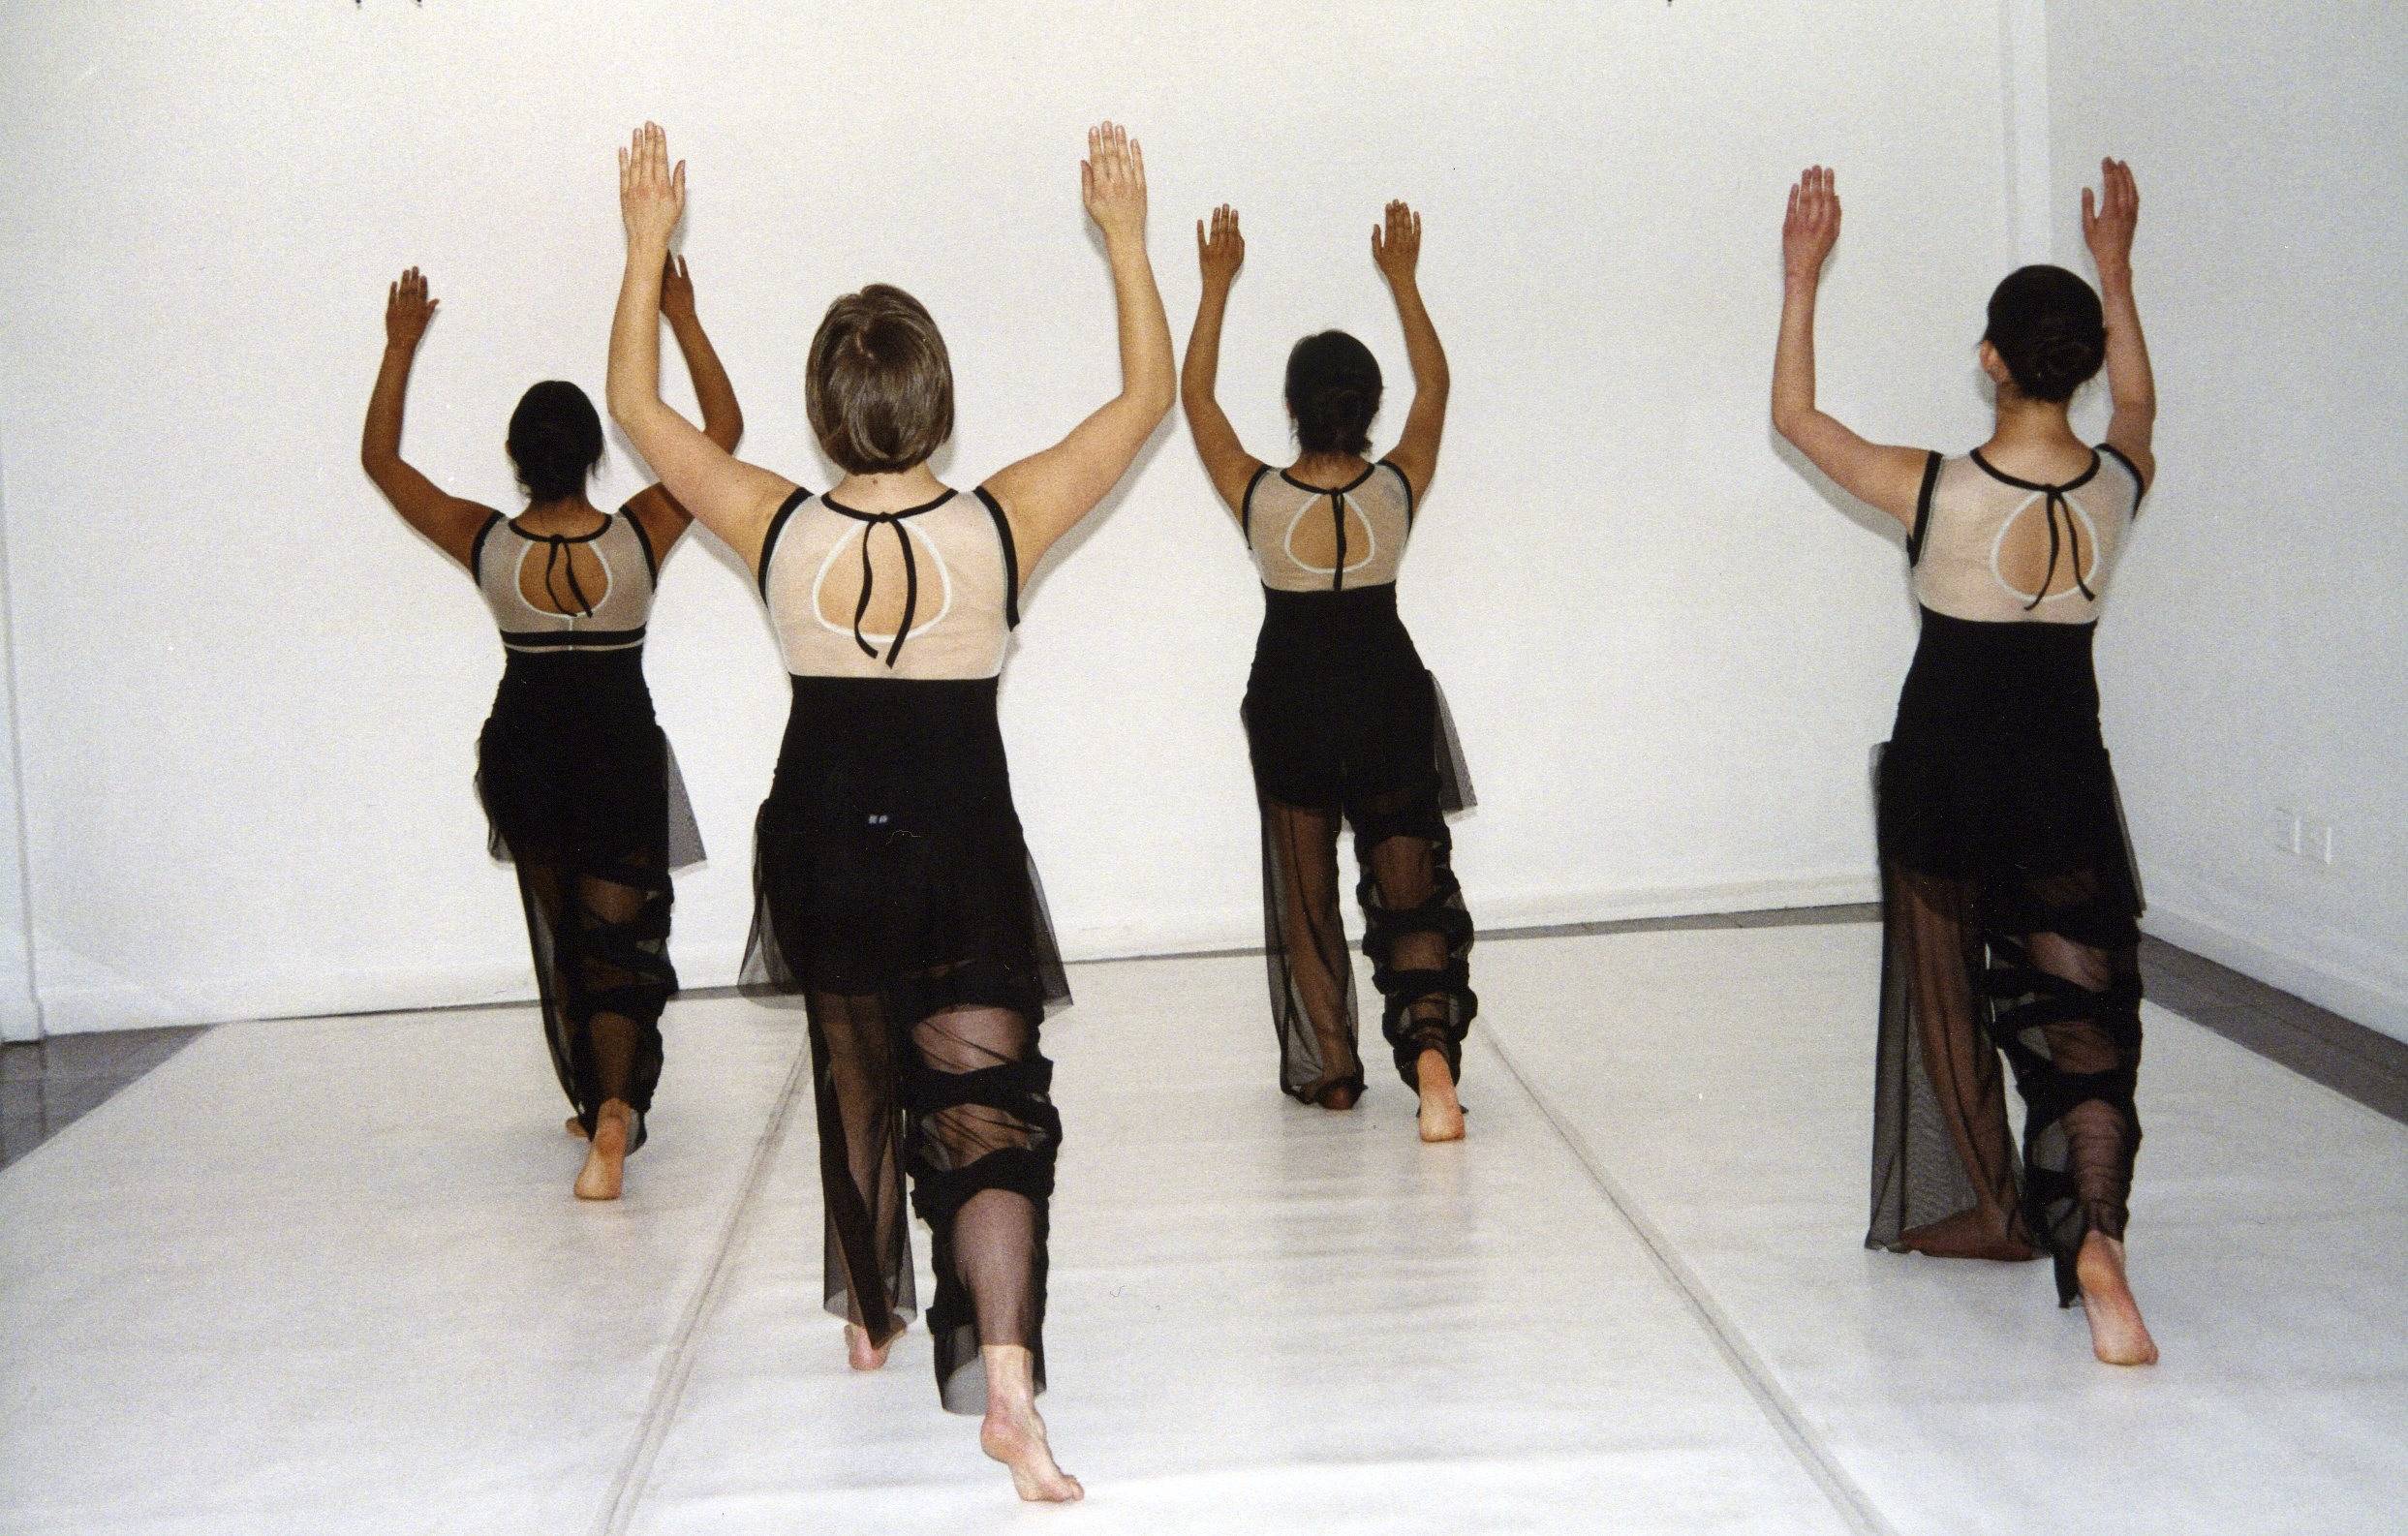  Costume Design Ballet Ensemble Noren G. de Rojas Bolivia 2005   